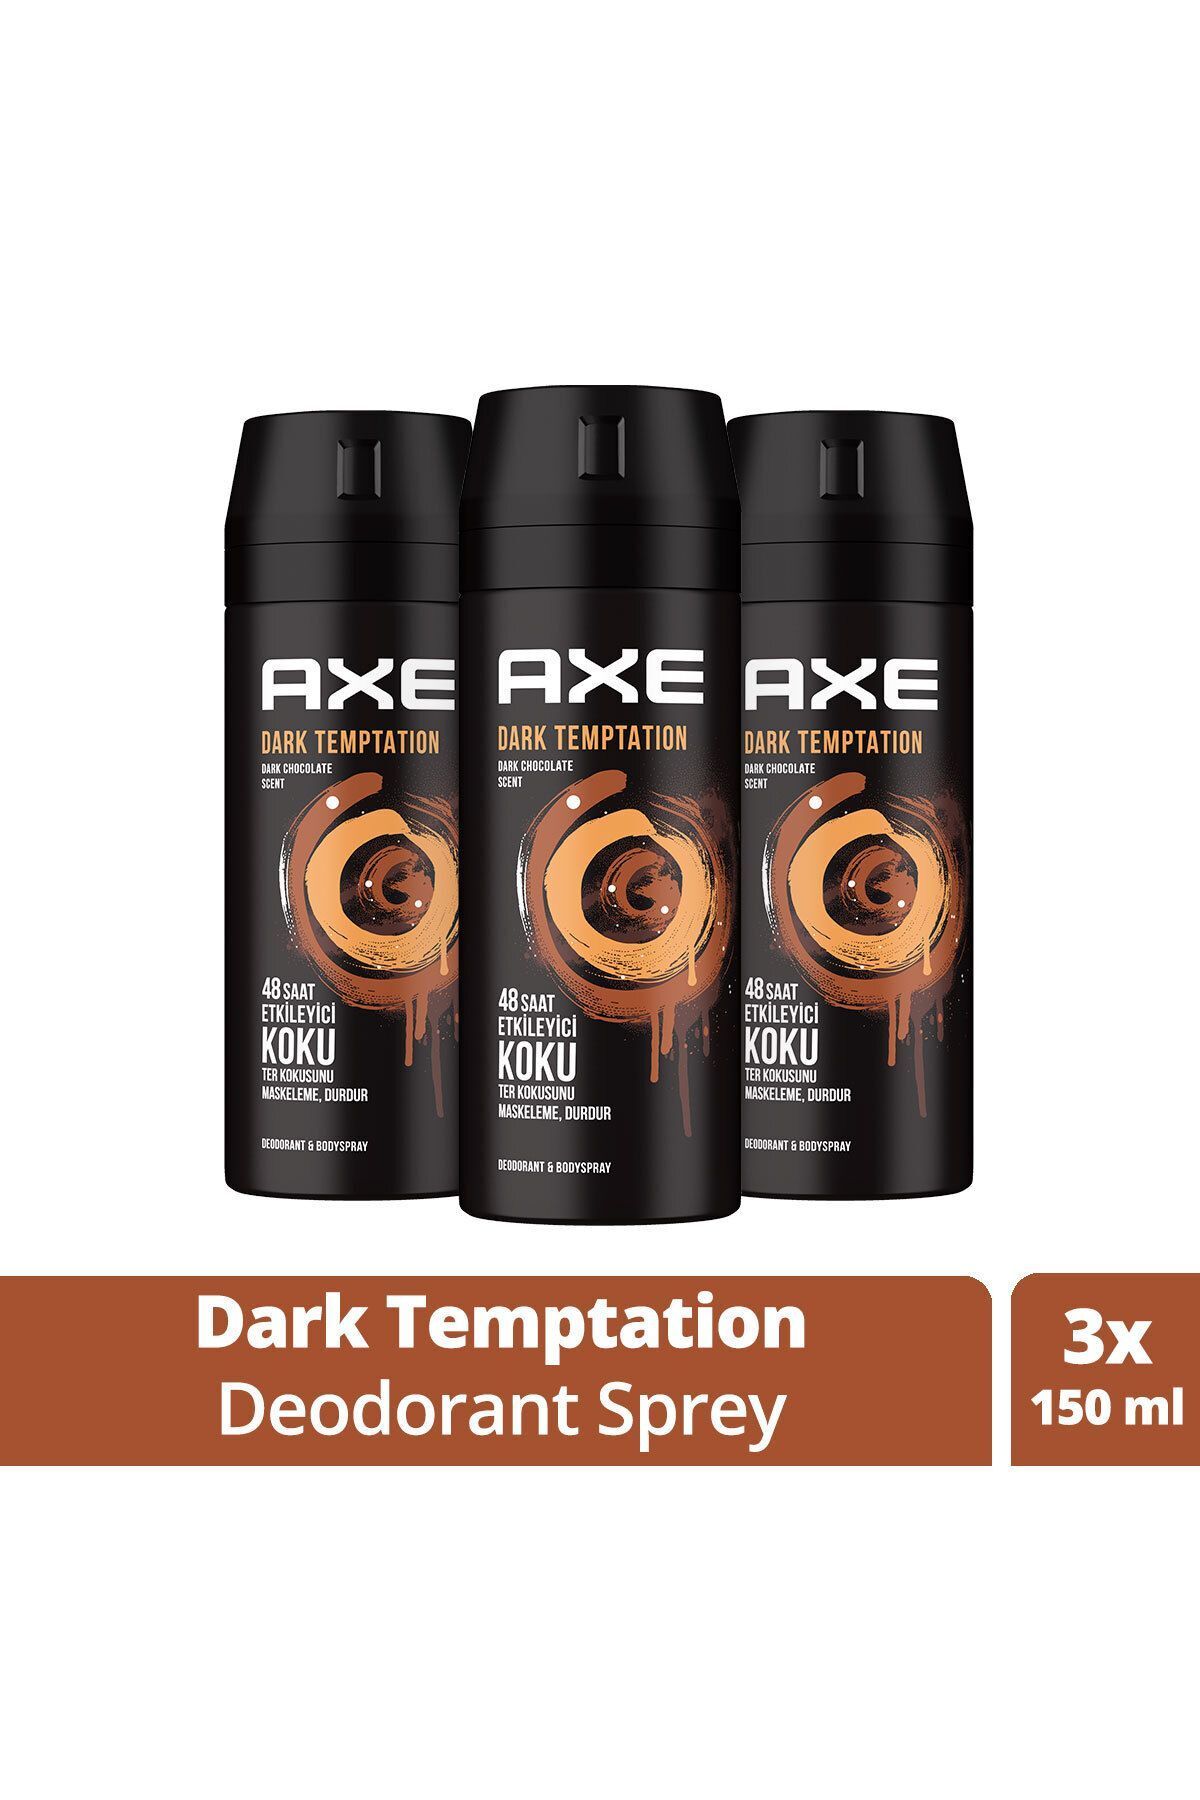 Axe Erkek Deodorant & Bodyspray Dark Temptation 48 Saat Etkileyici Koku Vücut Spreyi 150 ml X3 Adet